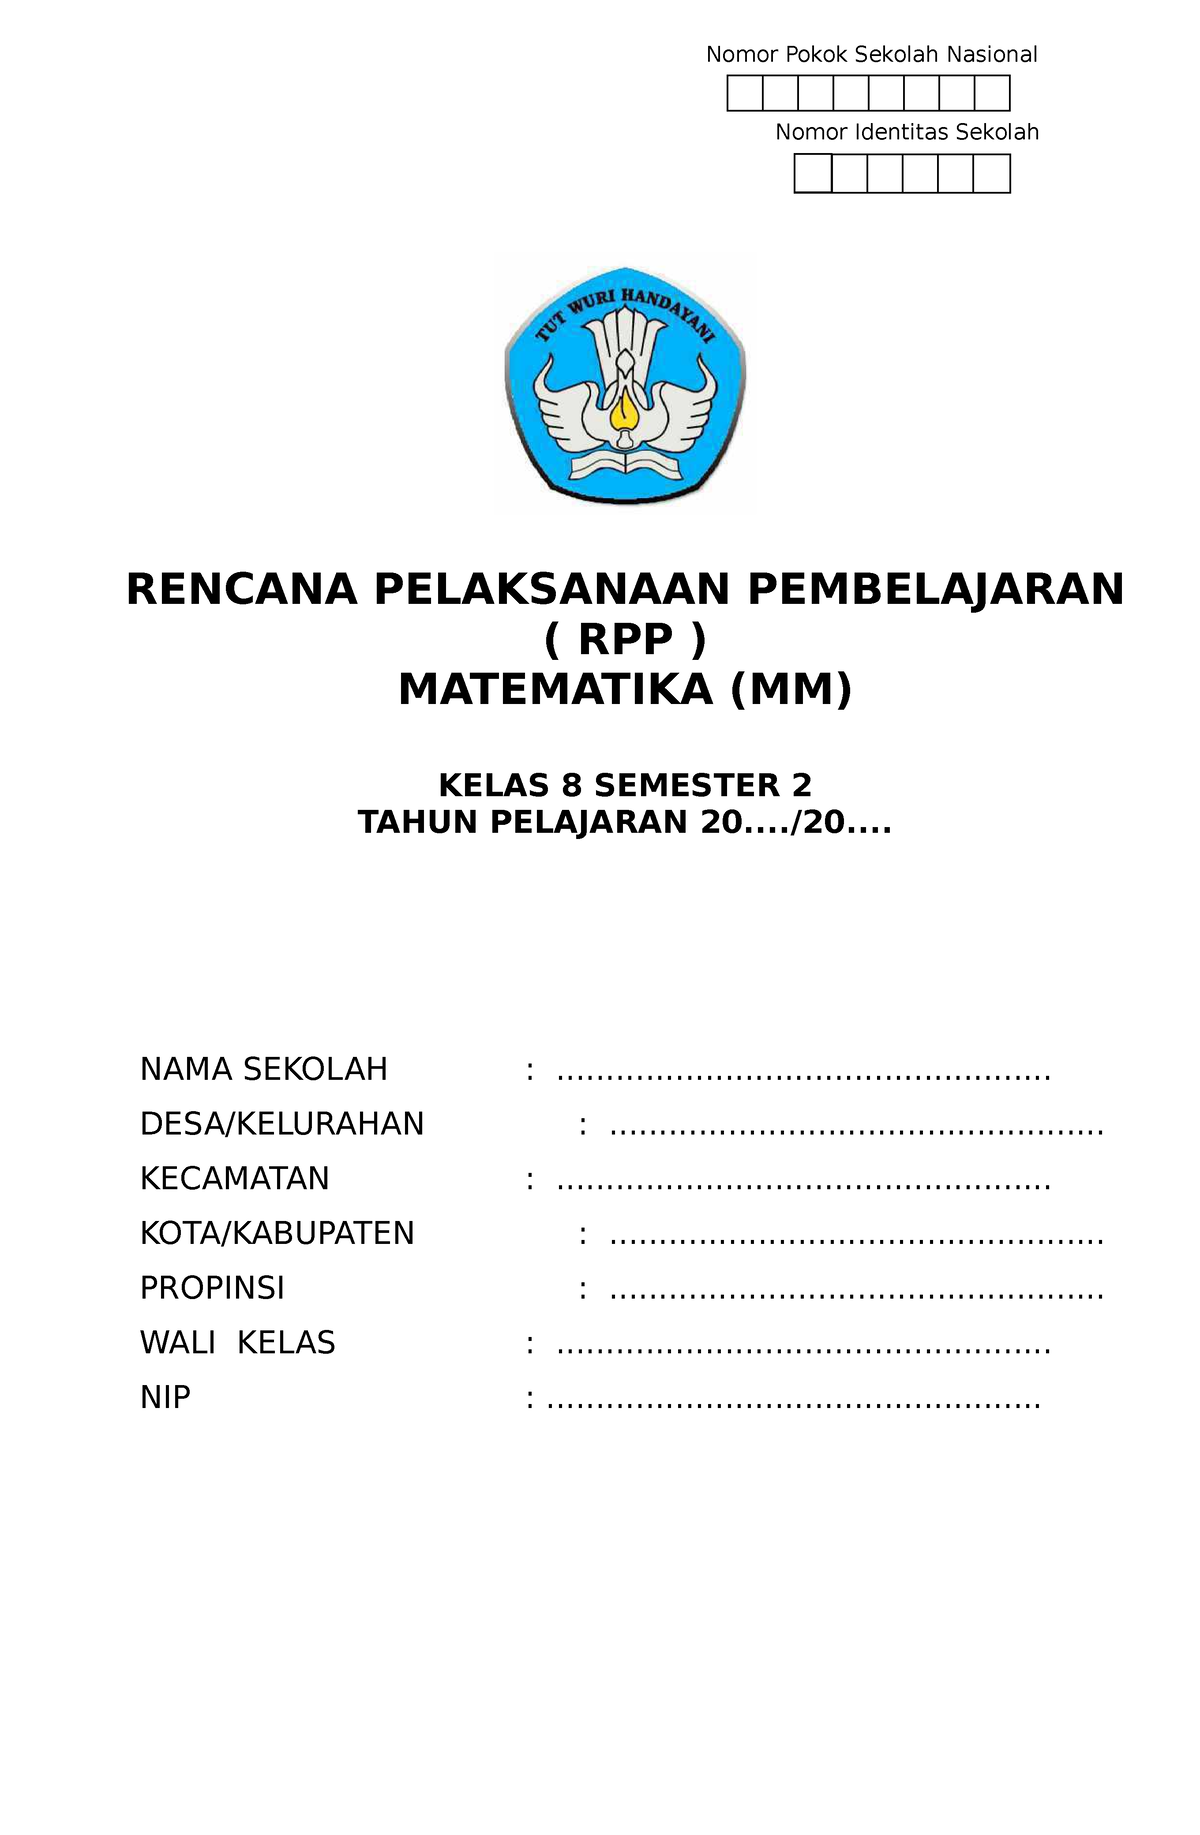 RPP 1 Lembar Matematika Kelas 8 Semester 2 www.kherysuryawan.id SMK